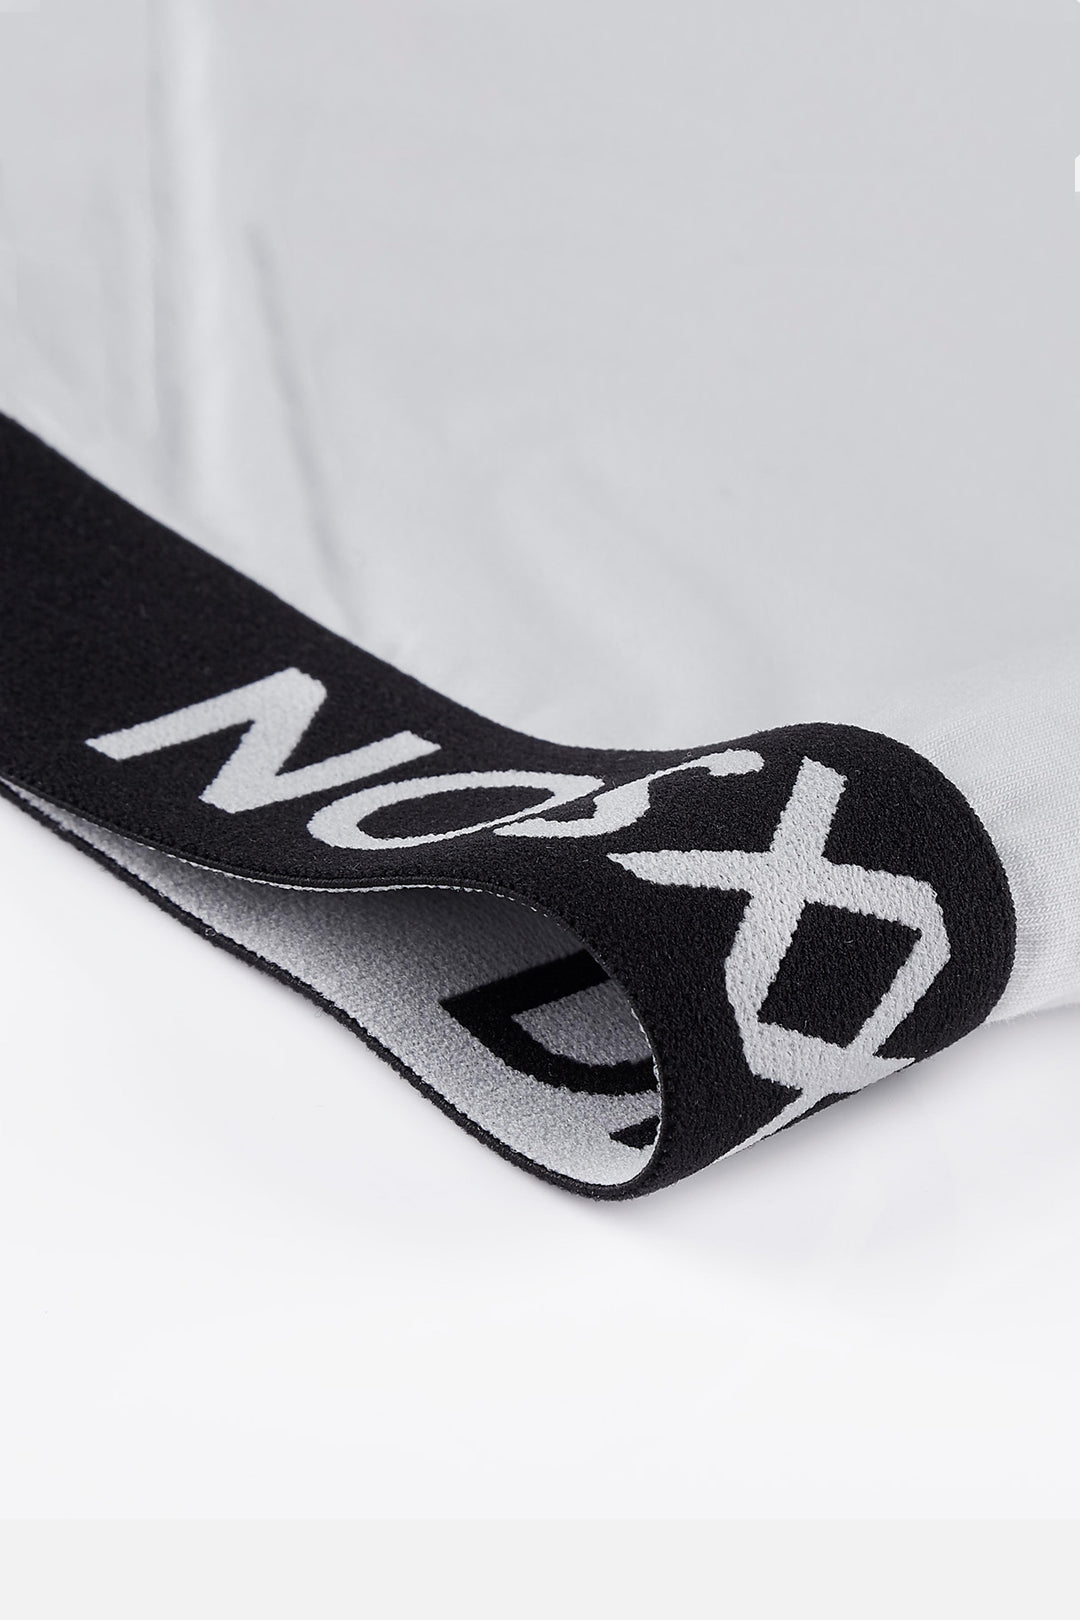 DIXXSON  Basic Boxershorts Herren - Waistband Hüftband schwarz mit weißem Logo